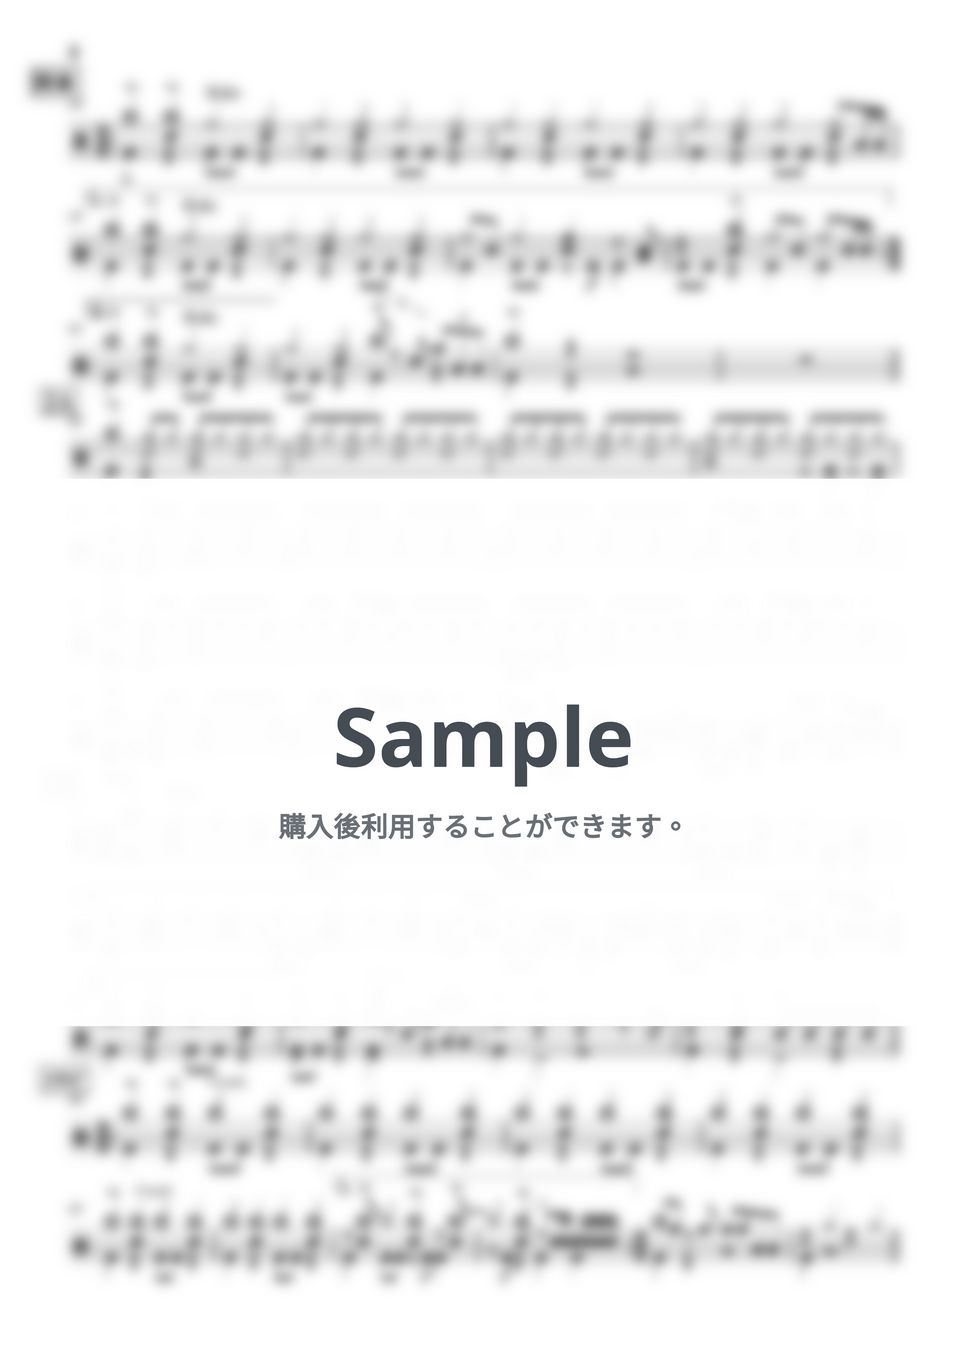 ヨルシカ - 又三郎【ドラム】 by Kornz MUSIC LESSON.net